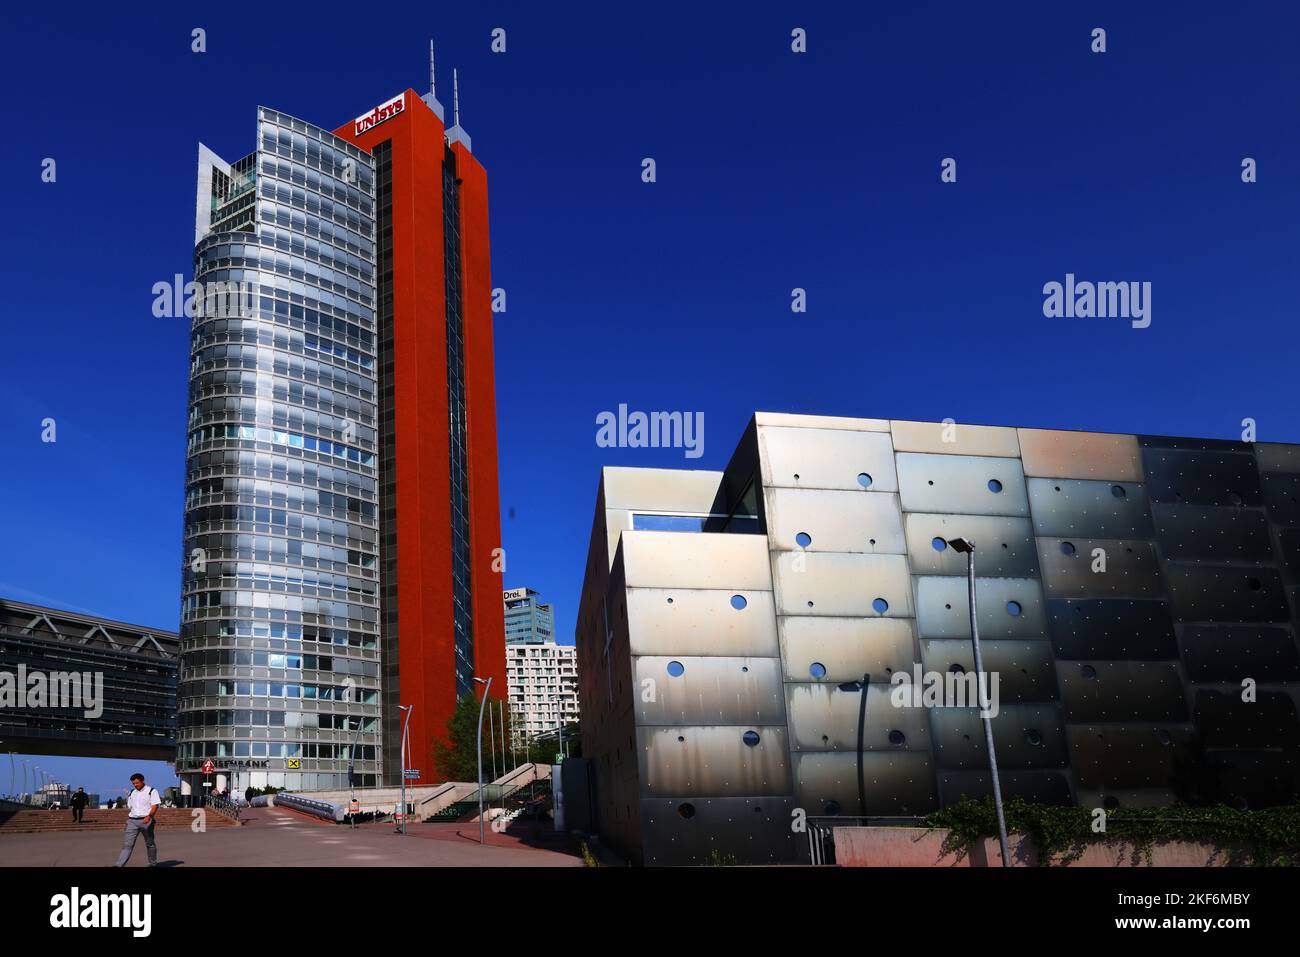 Donau City, Wien, Wien Architektur, Modern, Wien, moderne Architektur, in der Donaustadt mit Fenster und Spiegelung und Wand Banque D'Images